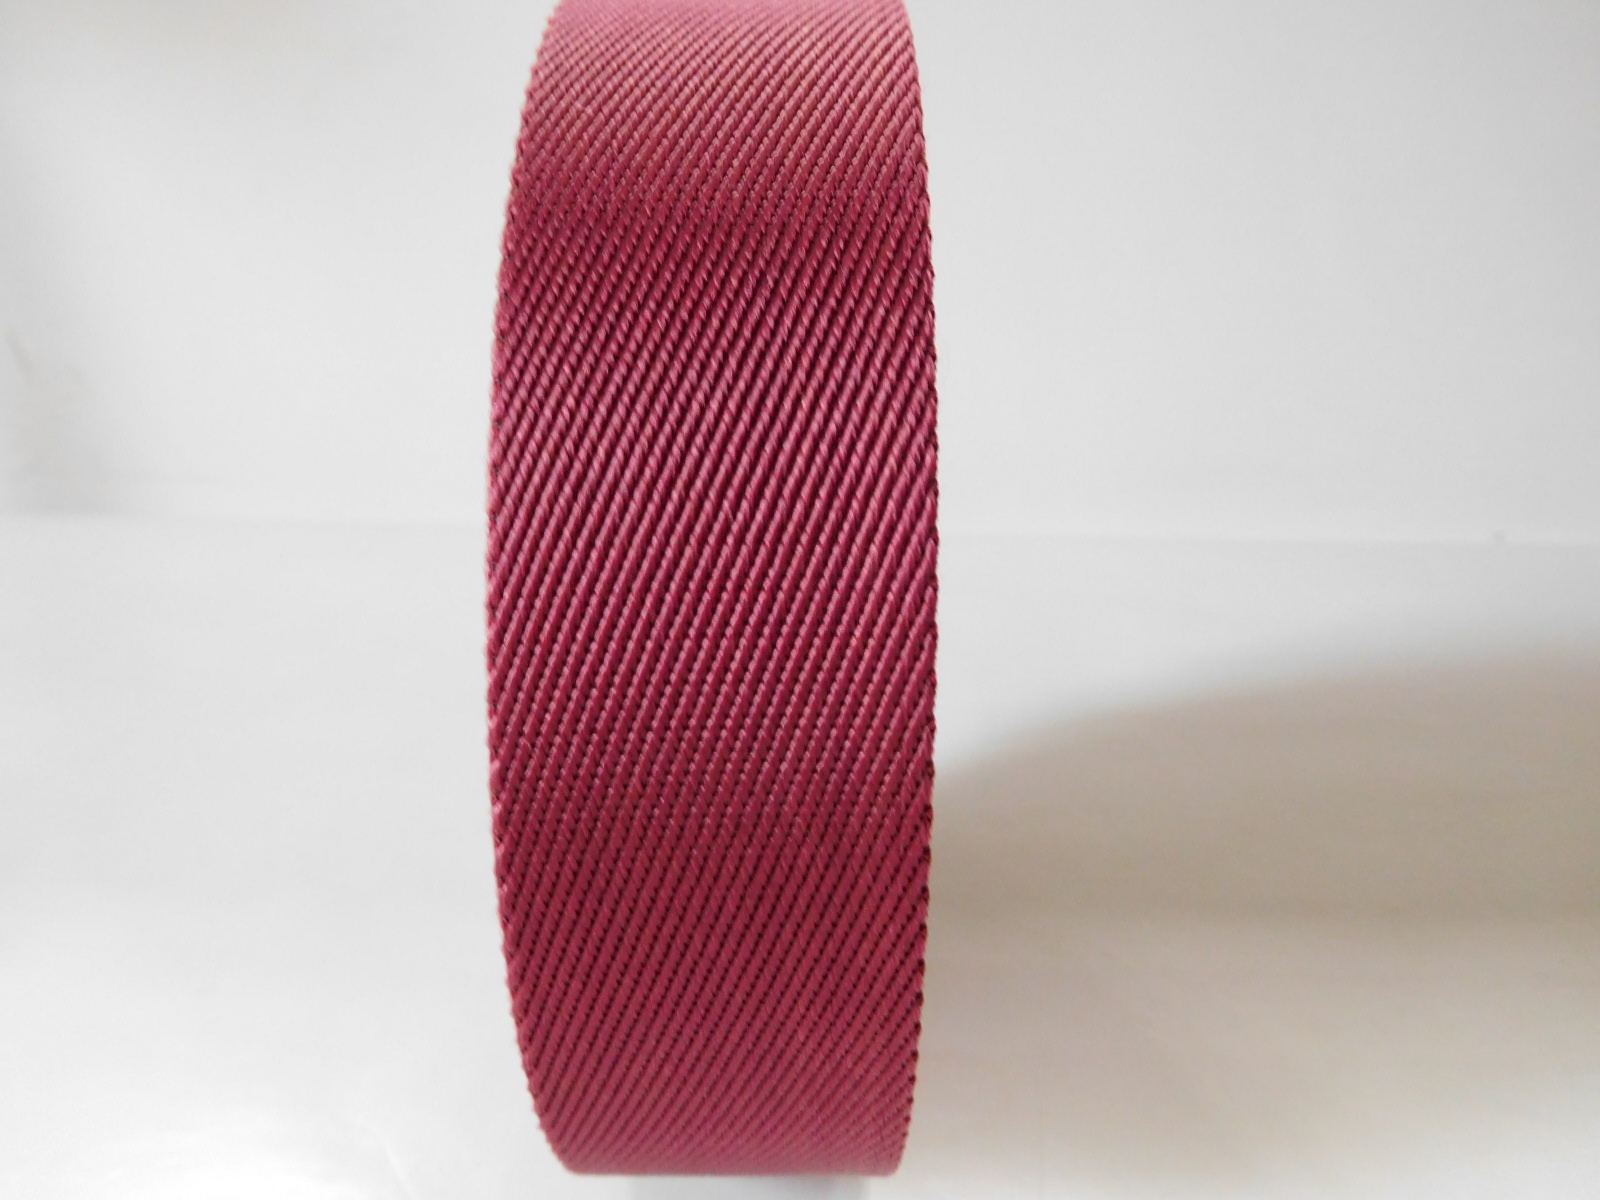 40mm twill nylon webbing for shoulder belt